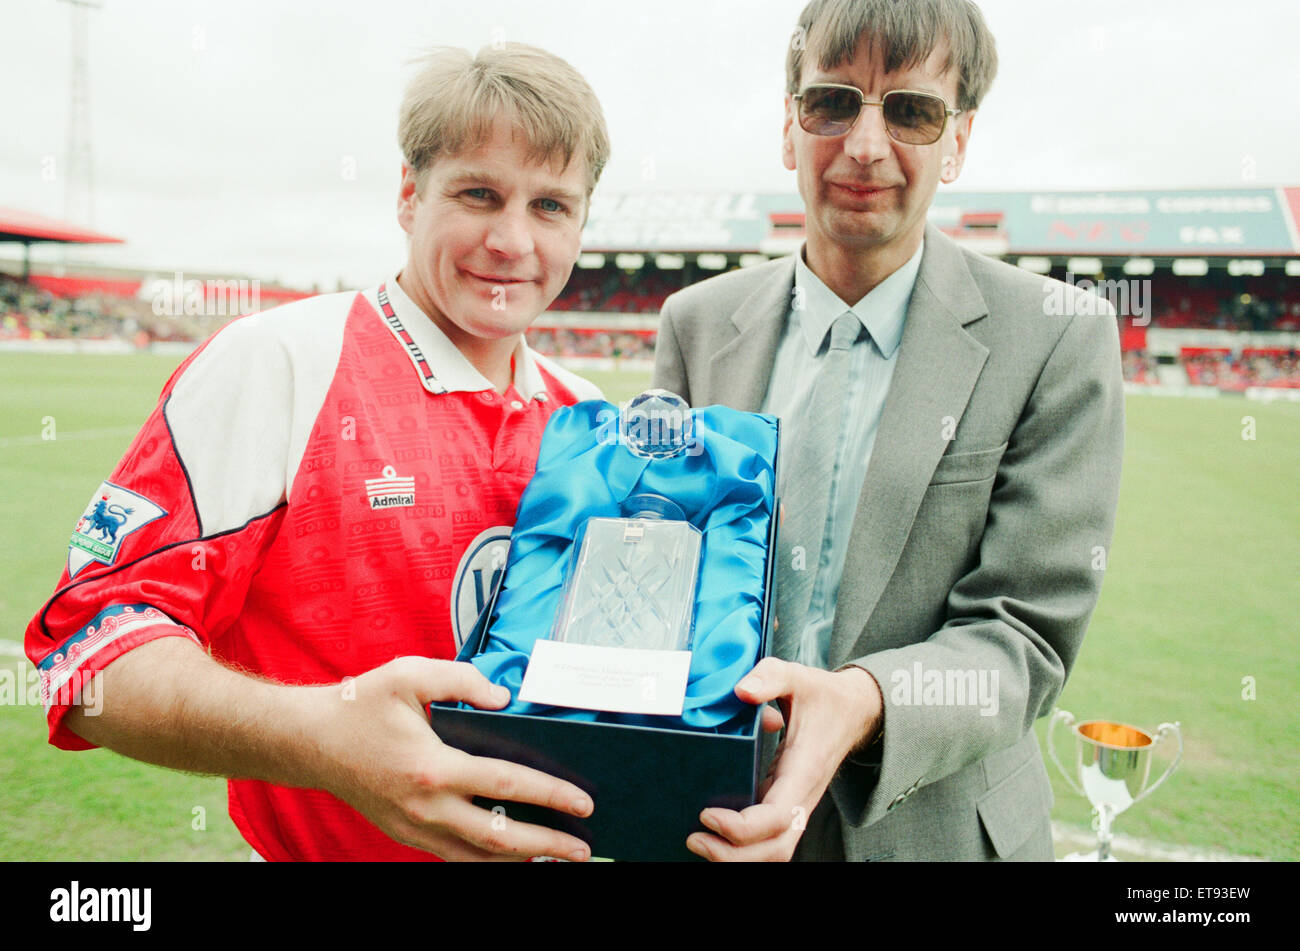 John Hendrie, Middlesbrough giocatore di calcio 1990-1996, receves l'ICI giocatore del premio di anno da Keith Stockdale, un Billingham opere empployee, a Ayresome Park, 9 maggio 1993. Foto Stock